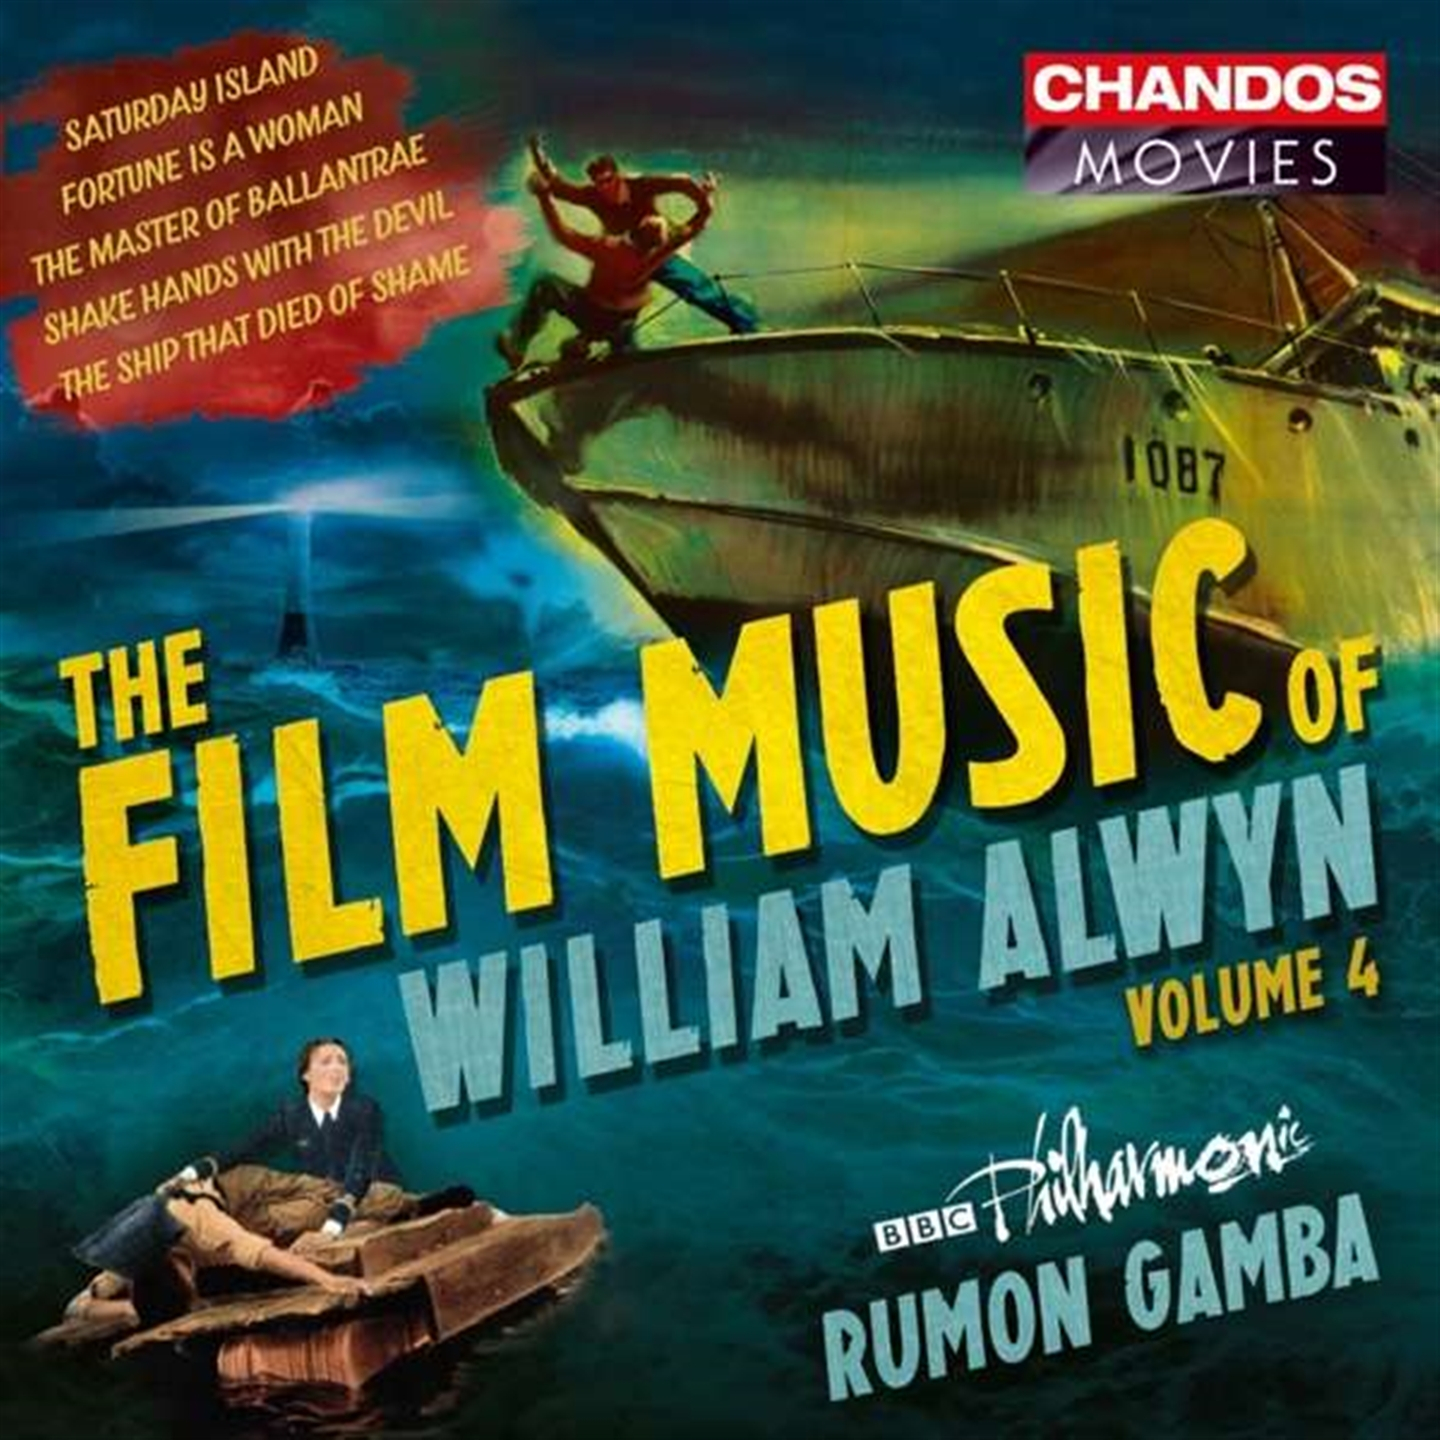 THE FILM MUSIC OF WILLIAM ALWYN VOL.4